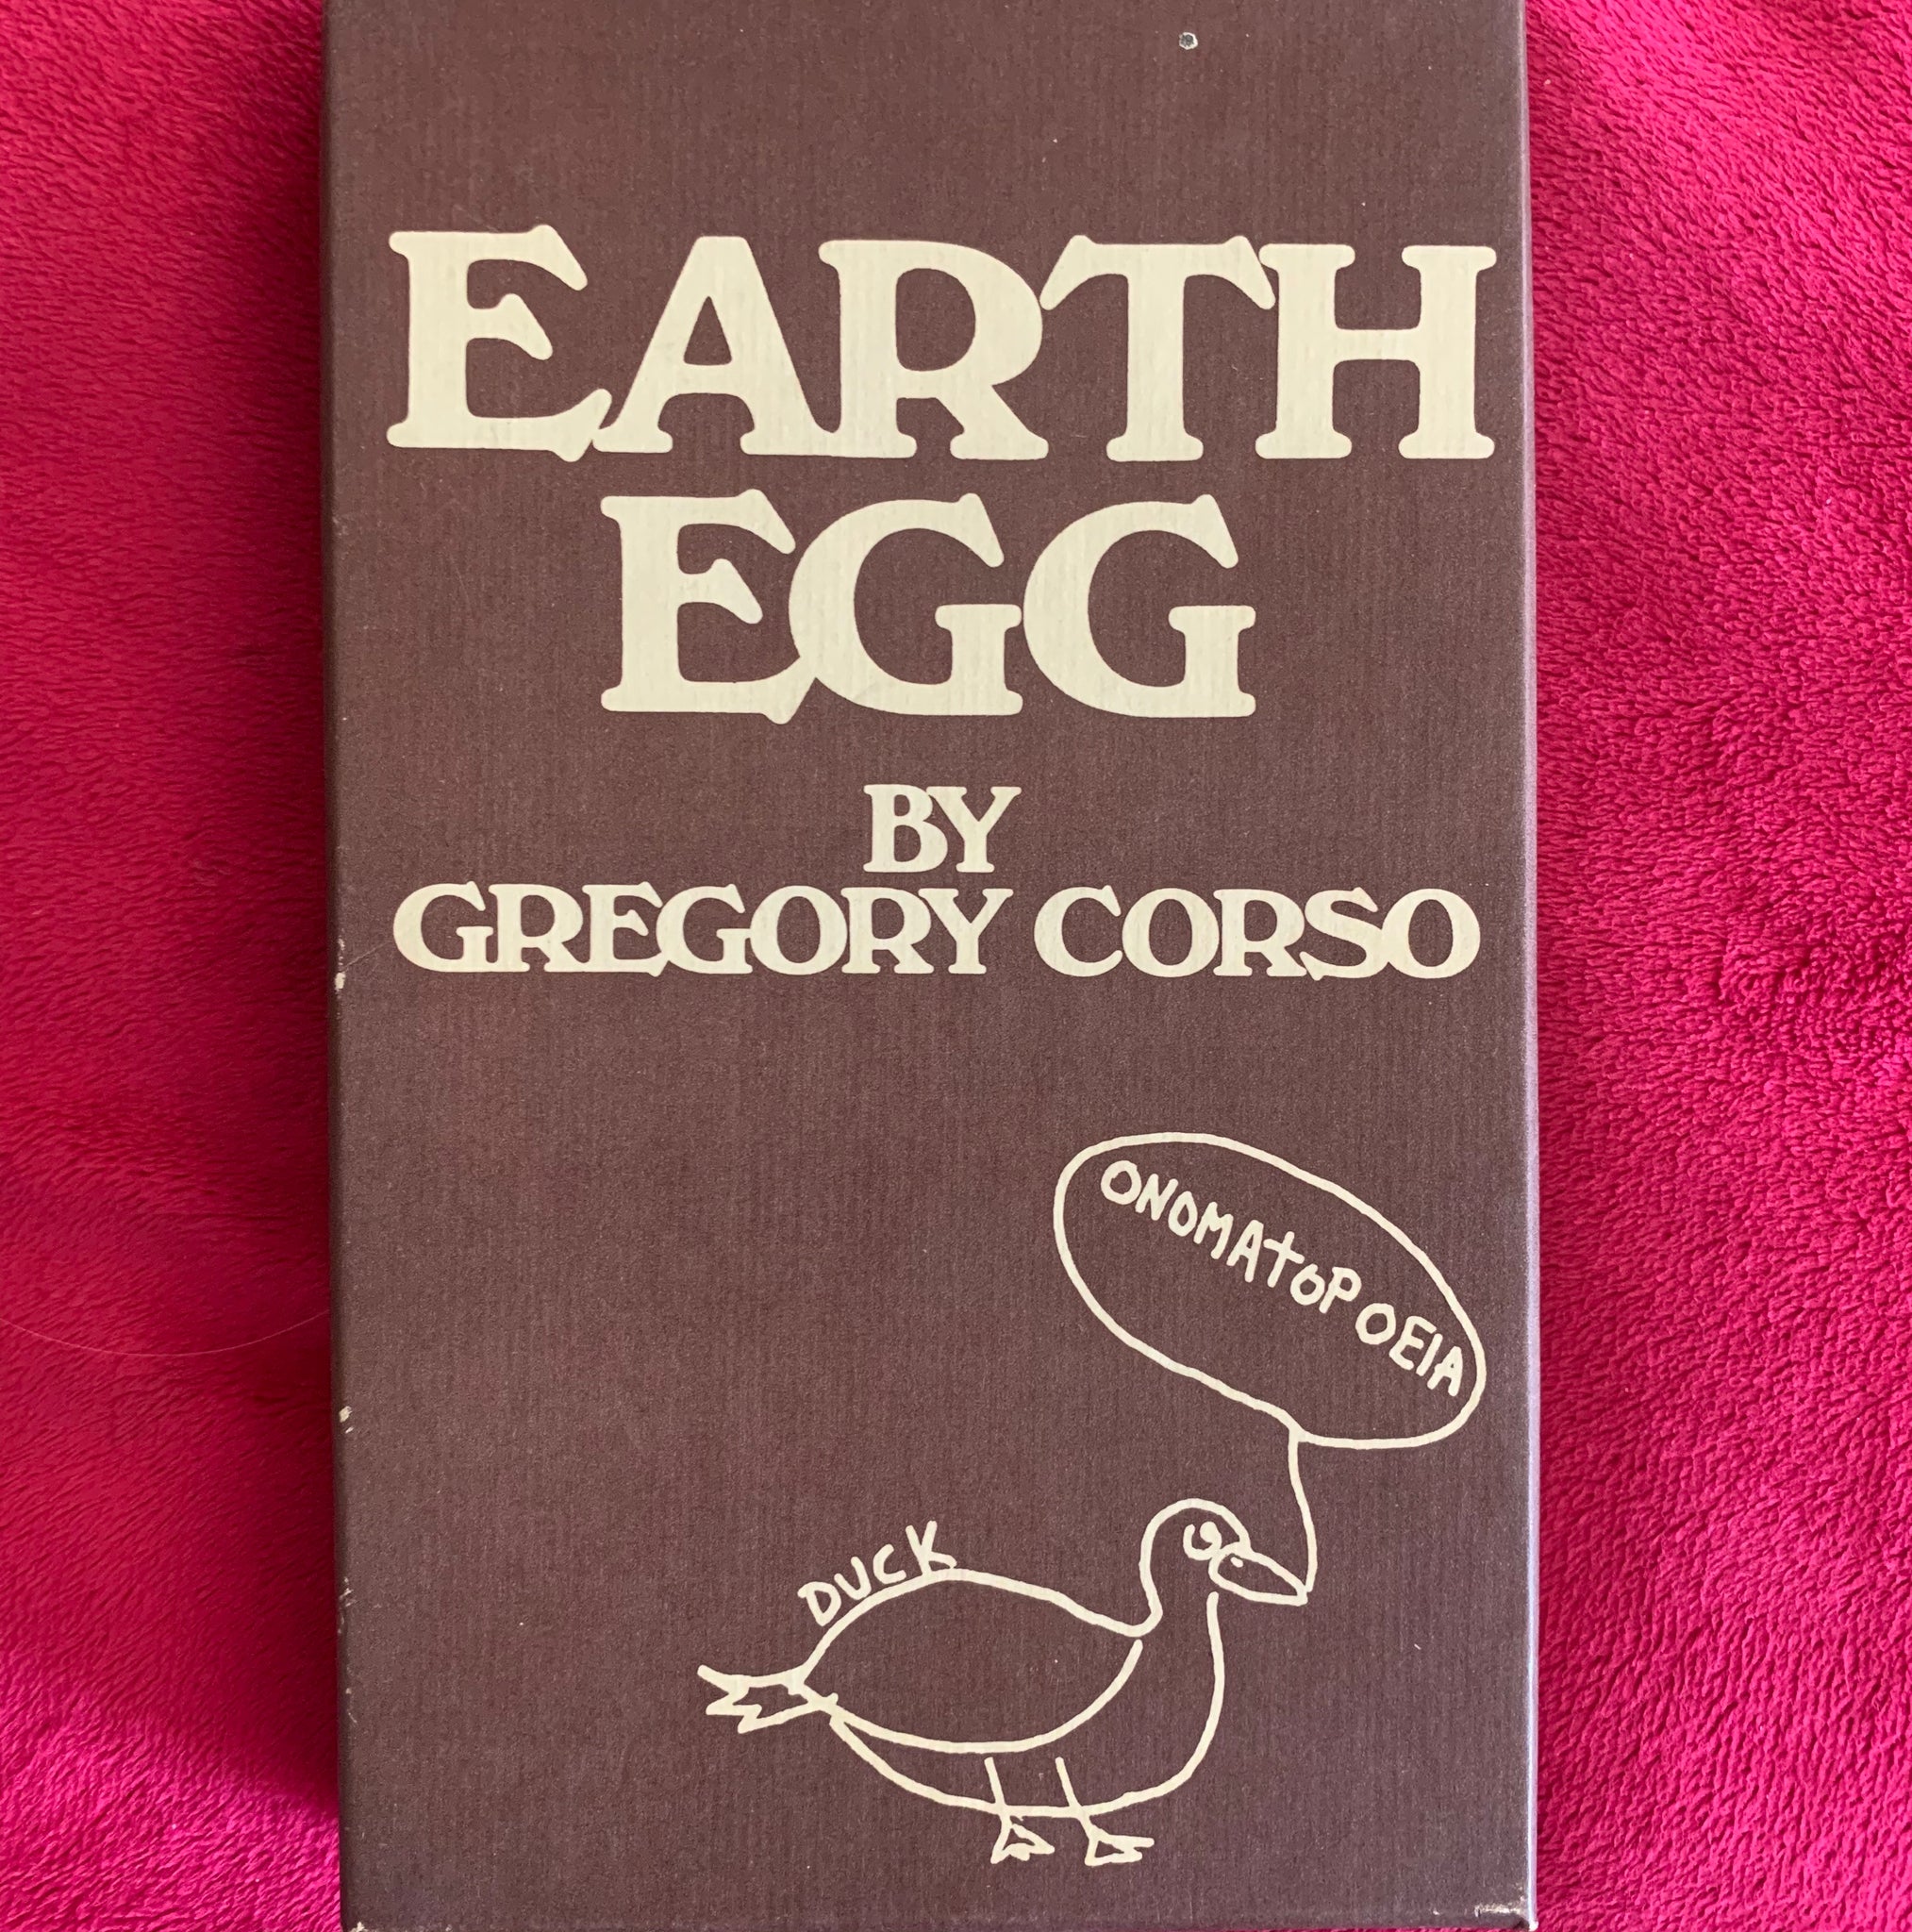 Earth Egg